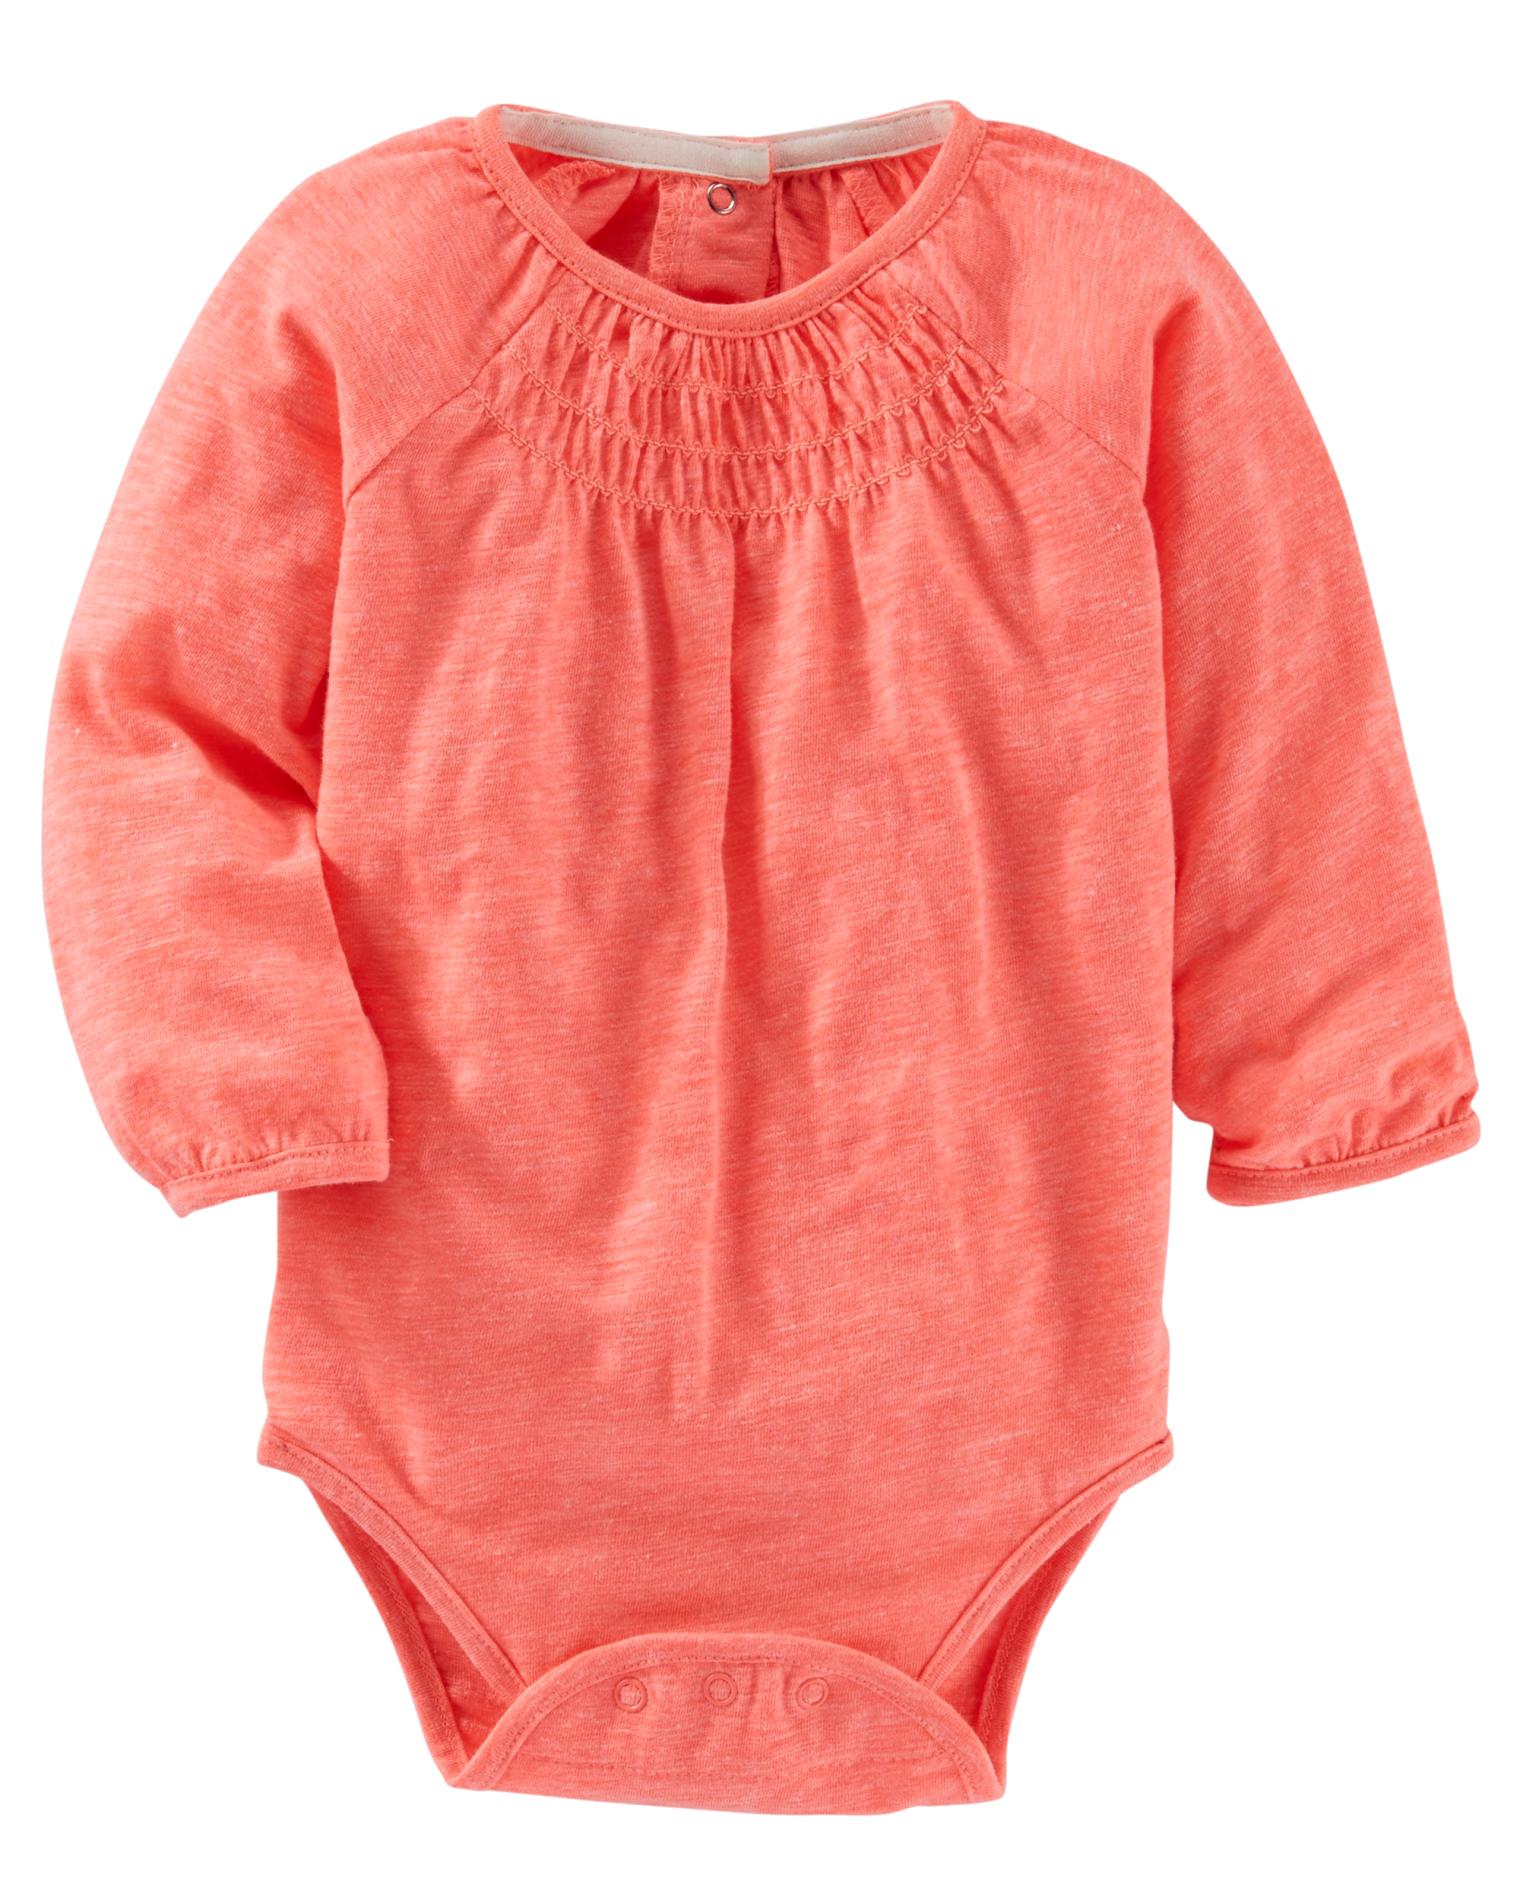 OshKosh Newborn & Infant Girls' Smocked Bodysuit